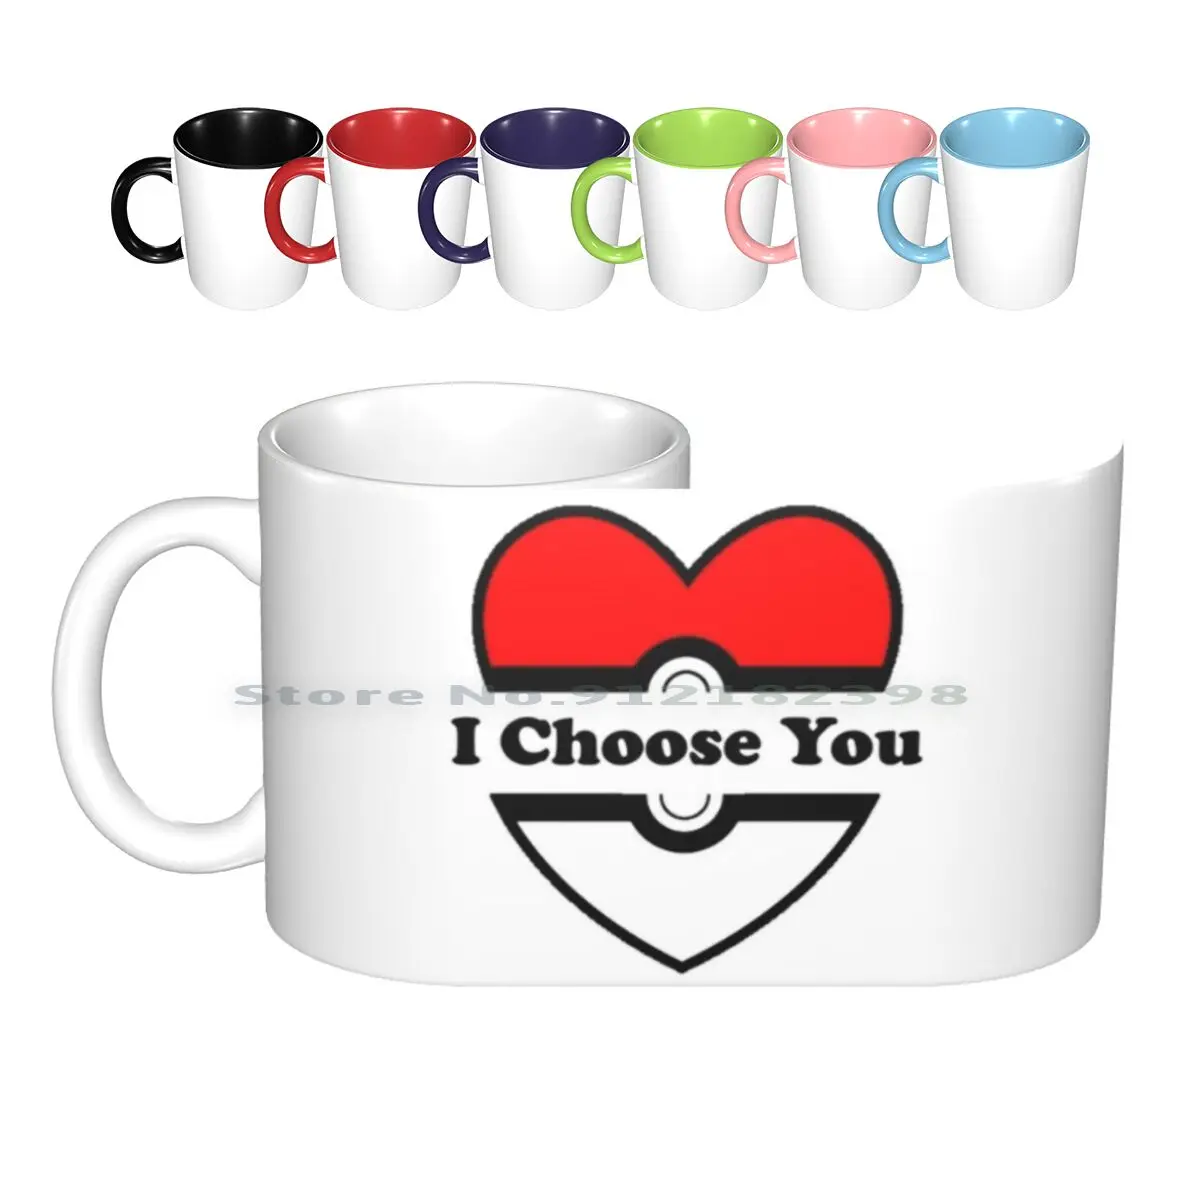 

I Choose You керамические кружки, кофейные чашки, Кружка для молока и чая, выбор You, Pokeball Love Valentines, романтика, романтика, сладкое сердце, веселый